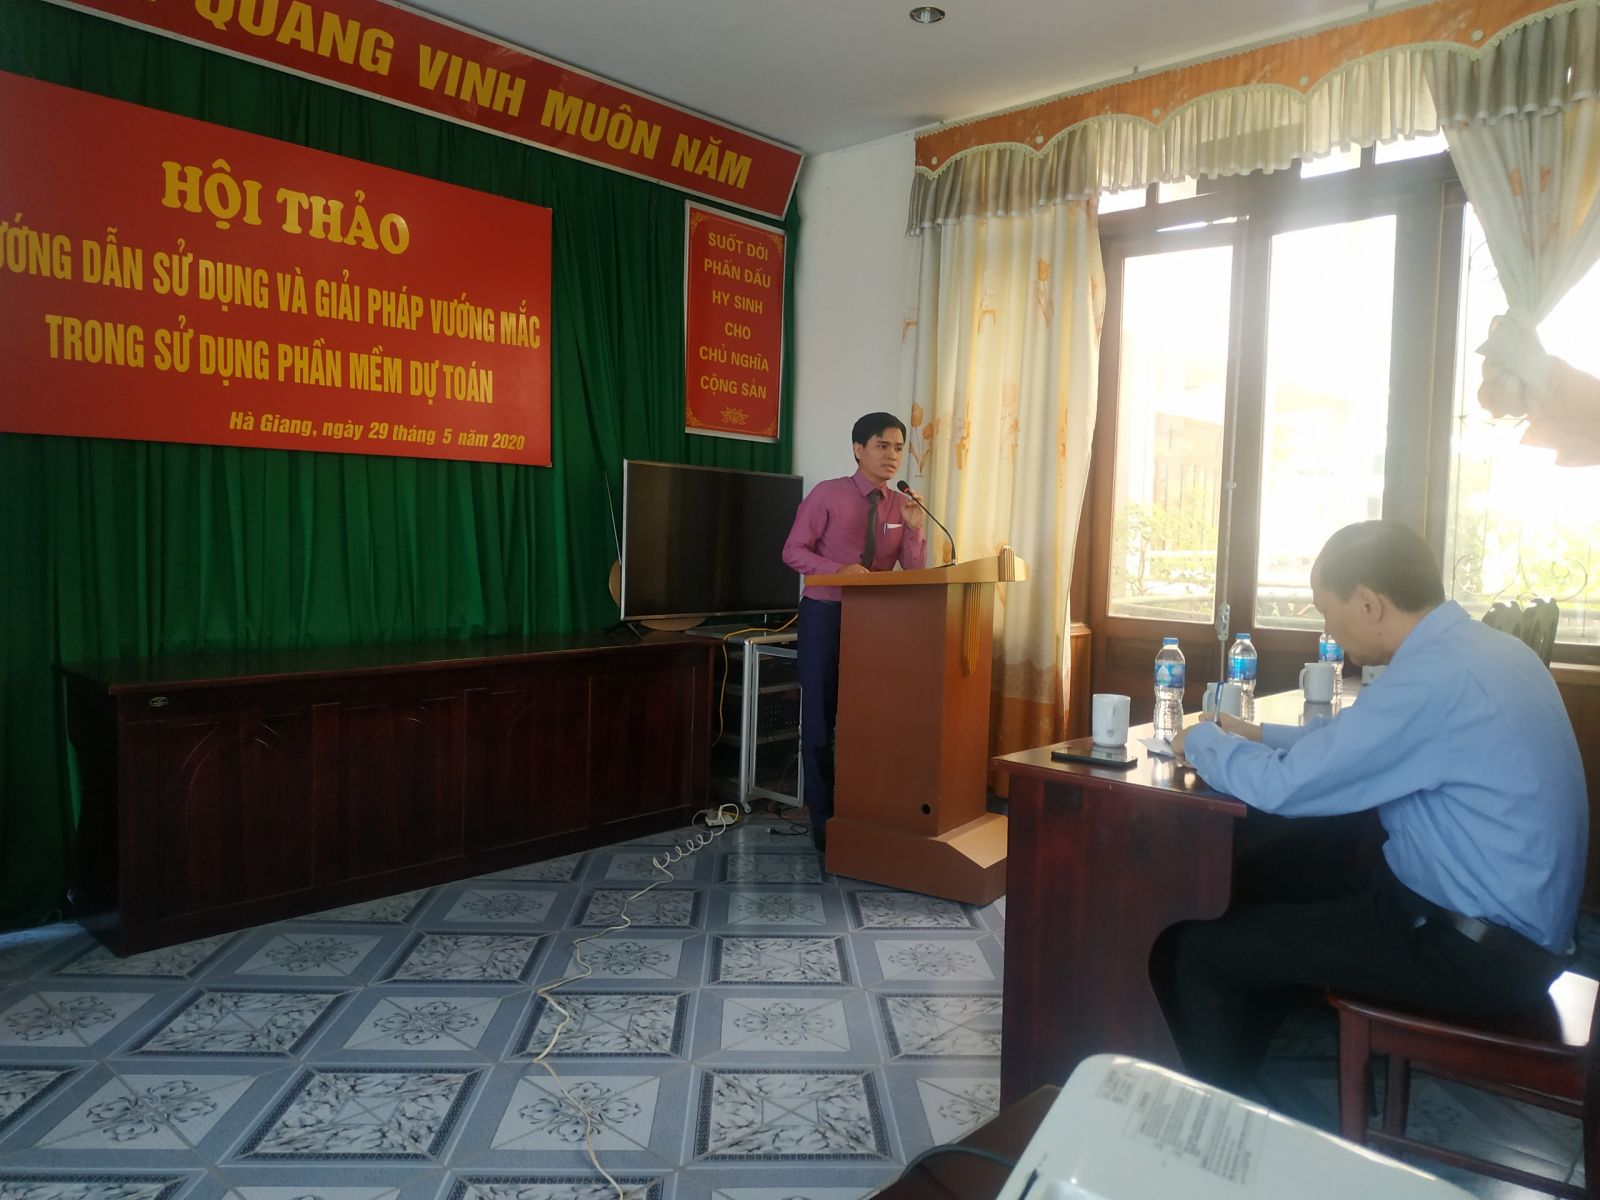 Hội thảo dự toán F1 tại Hà Giang